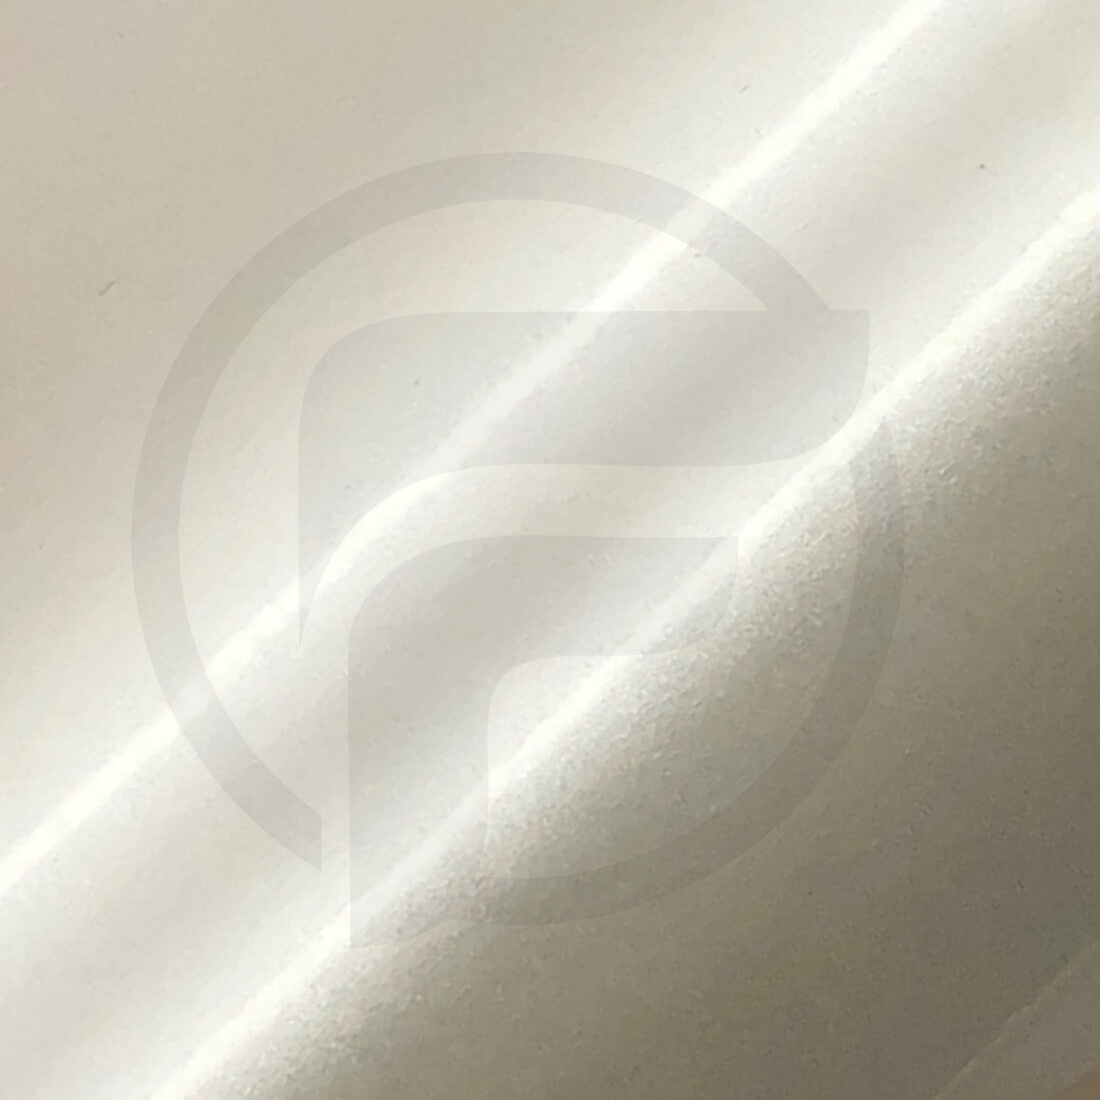 Autofolie Perlmutt Perleffekt Satin Weiß Hochglanz 152 cm x 100 cm Luftkanäle